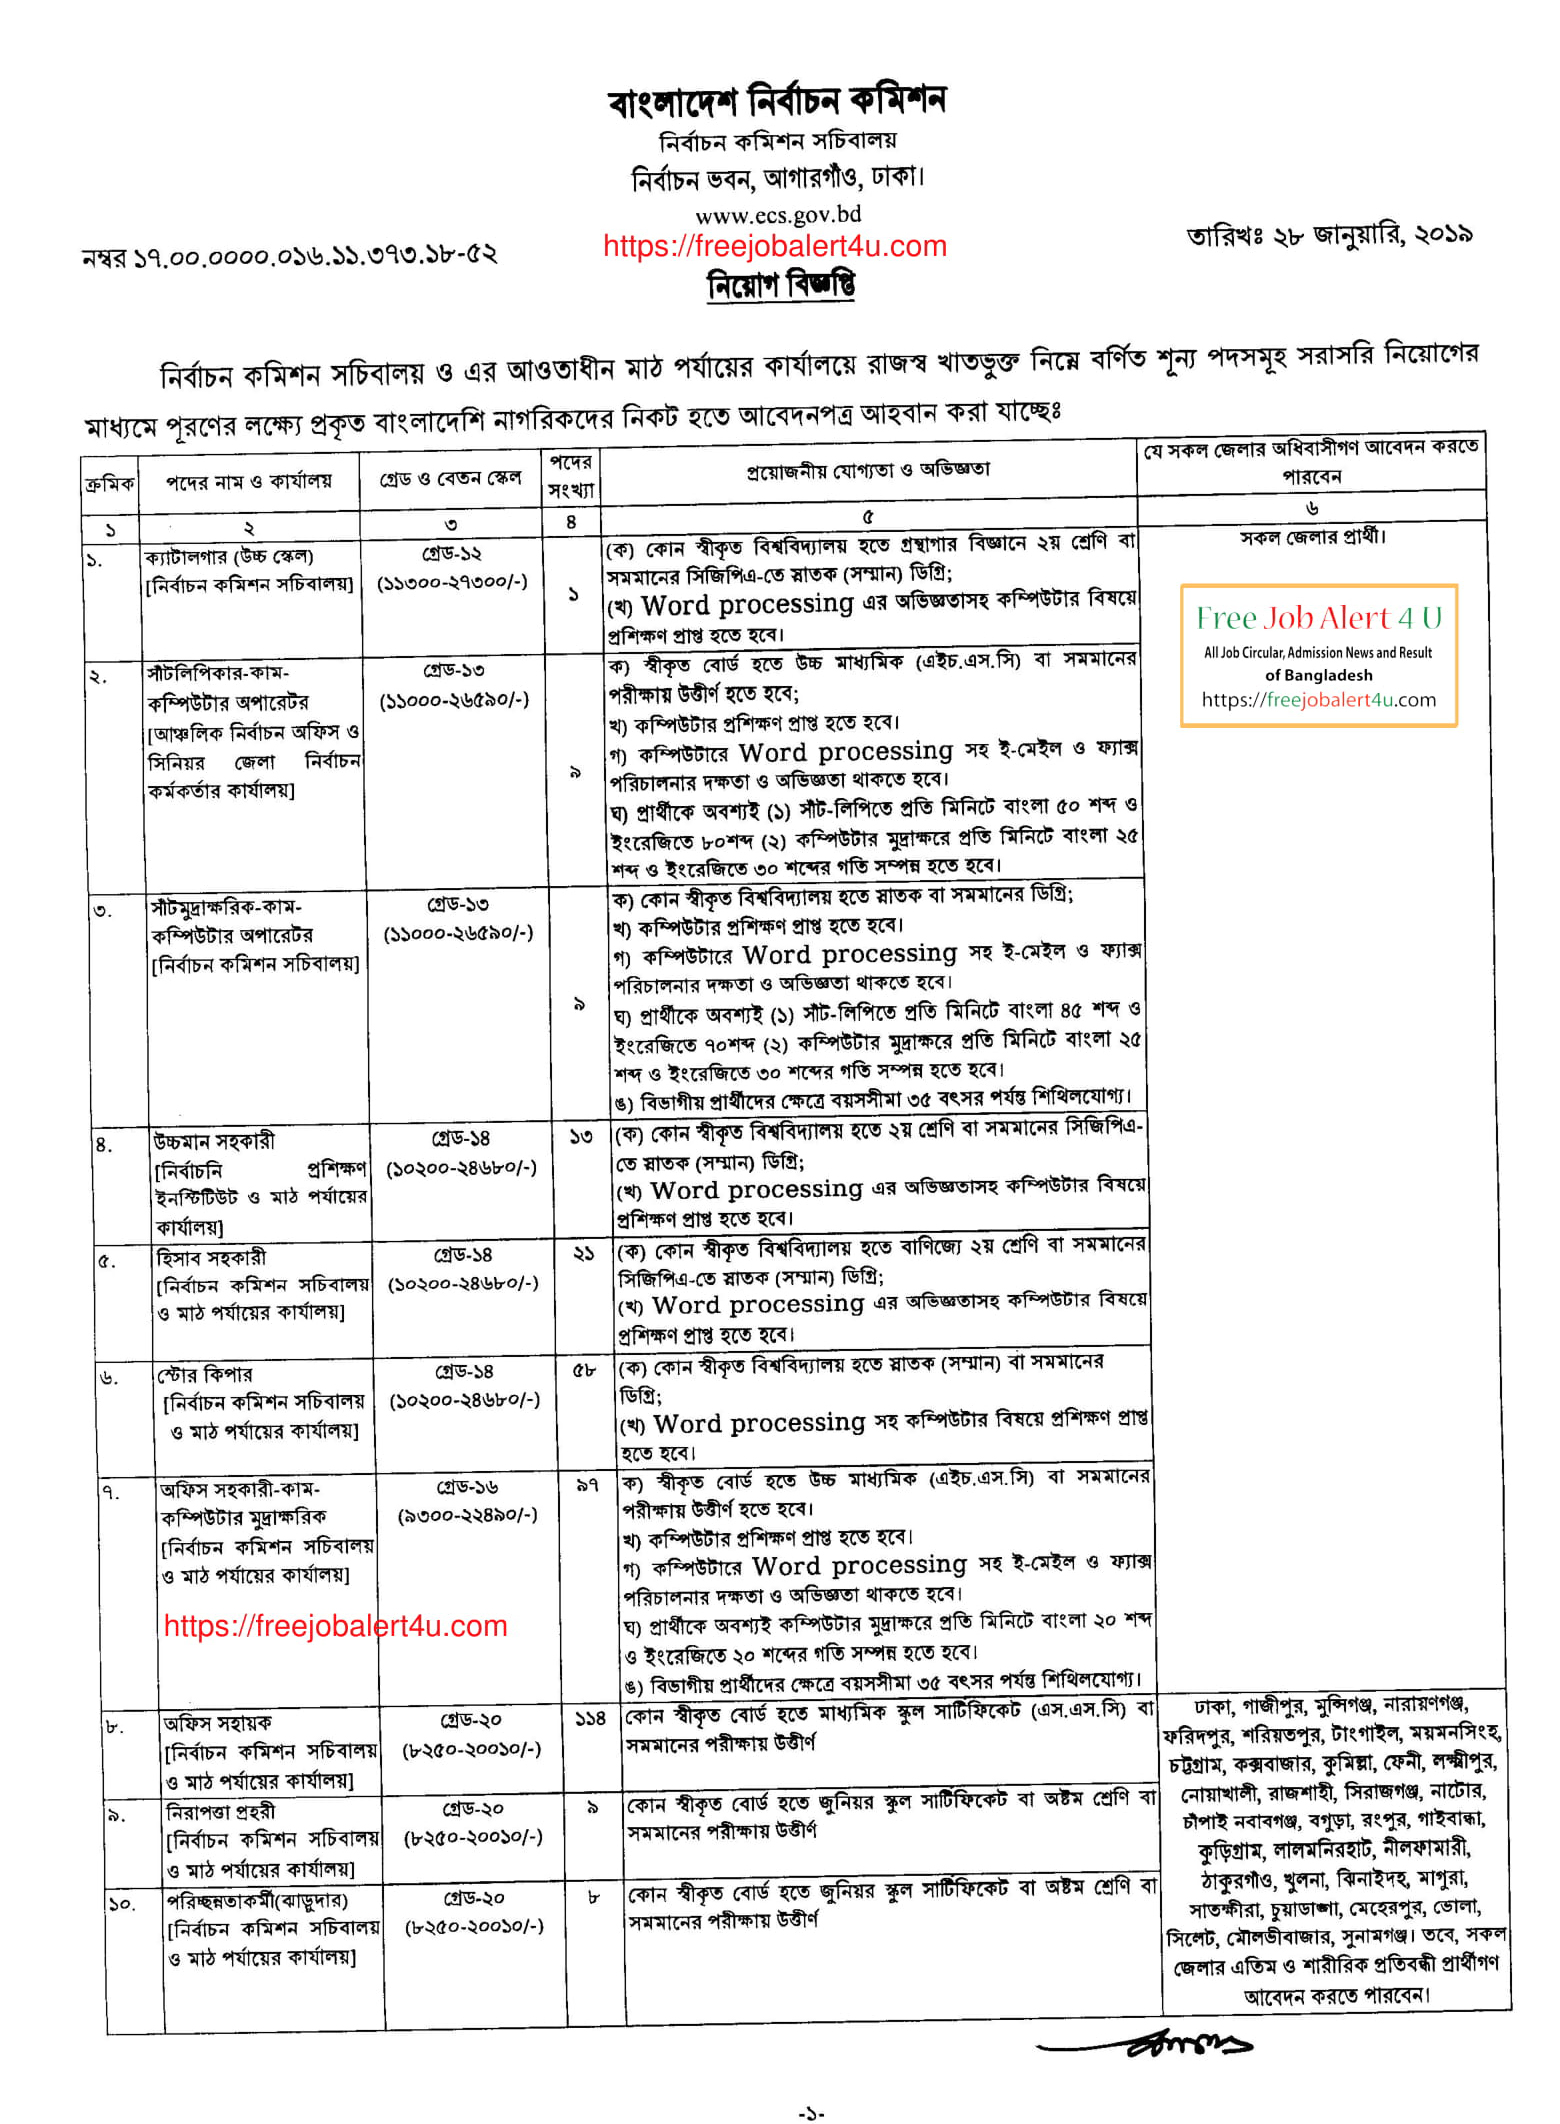 বাংলাদেশ নির্বাচন কমিশন সচিবালয় নিয়োগ বিজ্ঞপ্তি ২০১৯ (Election Commission Bangladesh (ECS) job circular 2019)